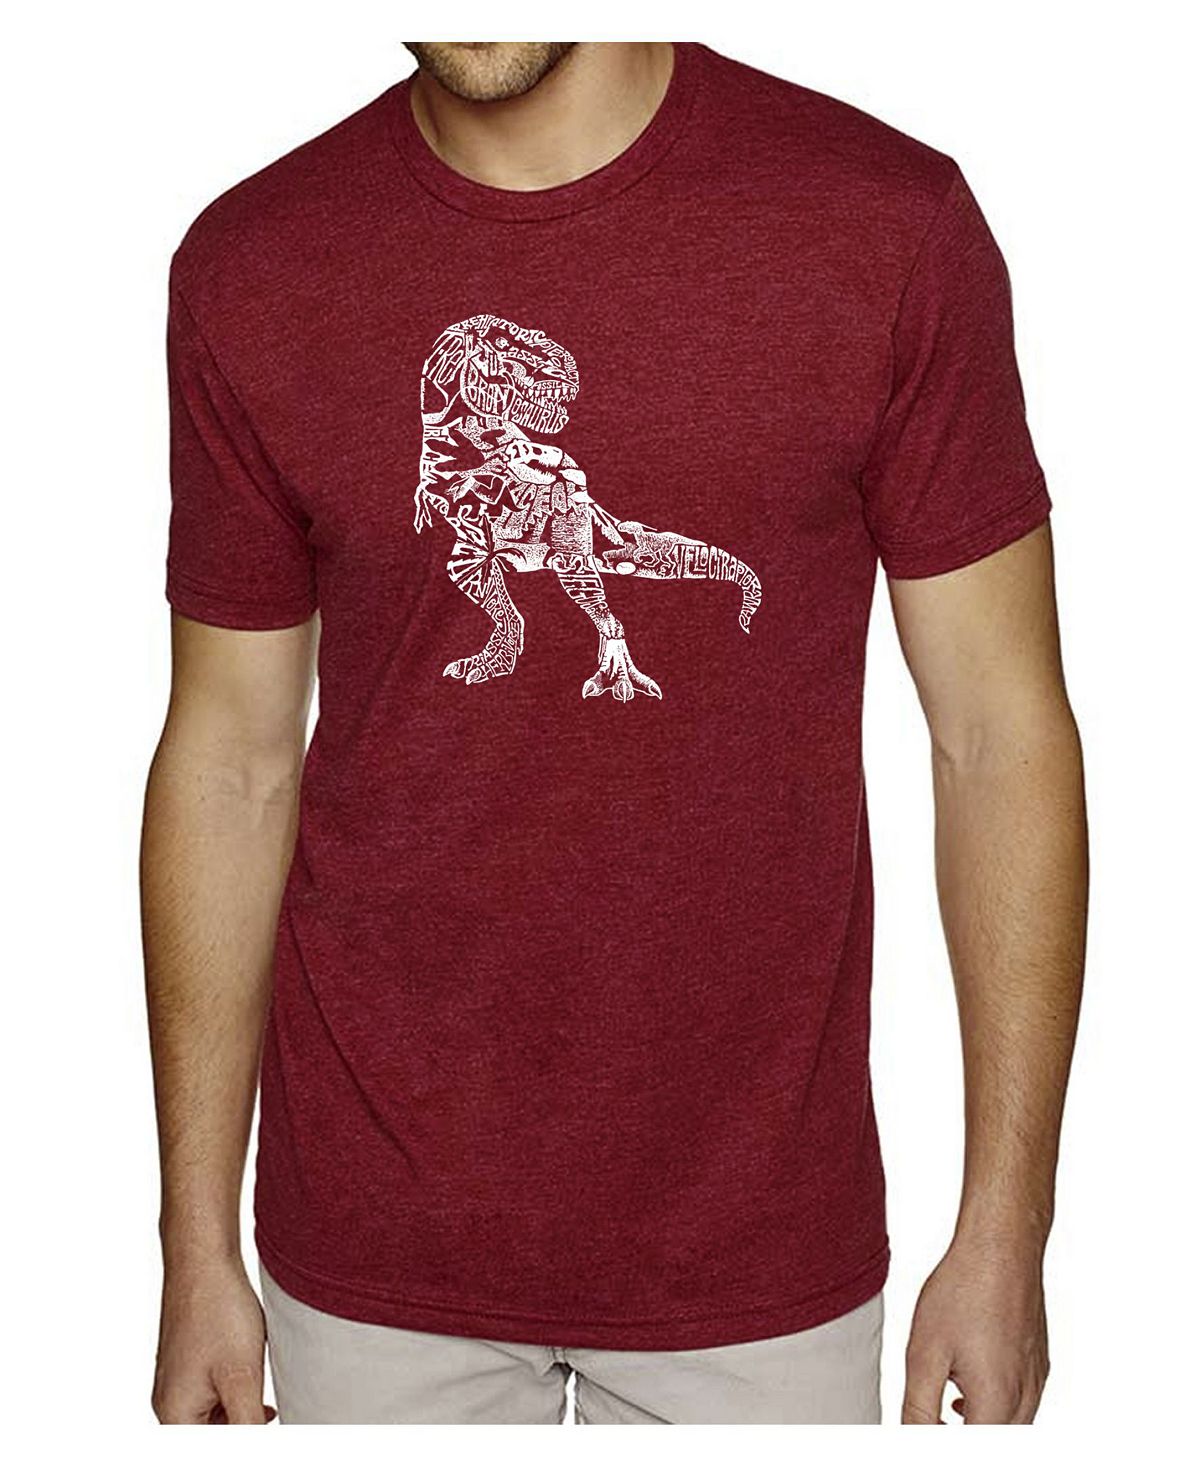 Мужская футболка premium blend word art - динозавр LA Pop Art набор мир юрского периода фигурка t rex кружка хиппи